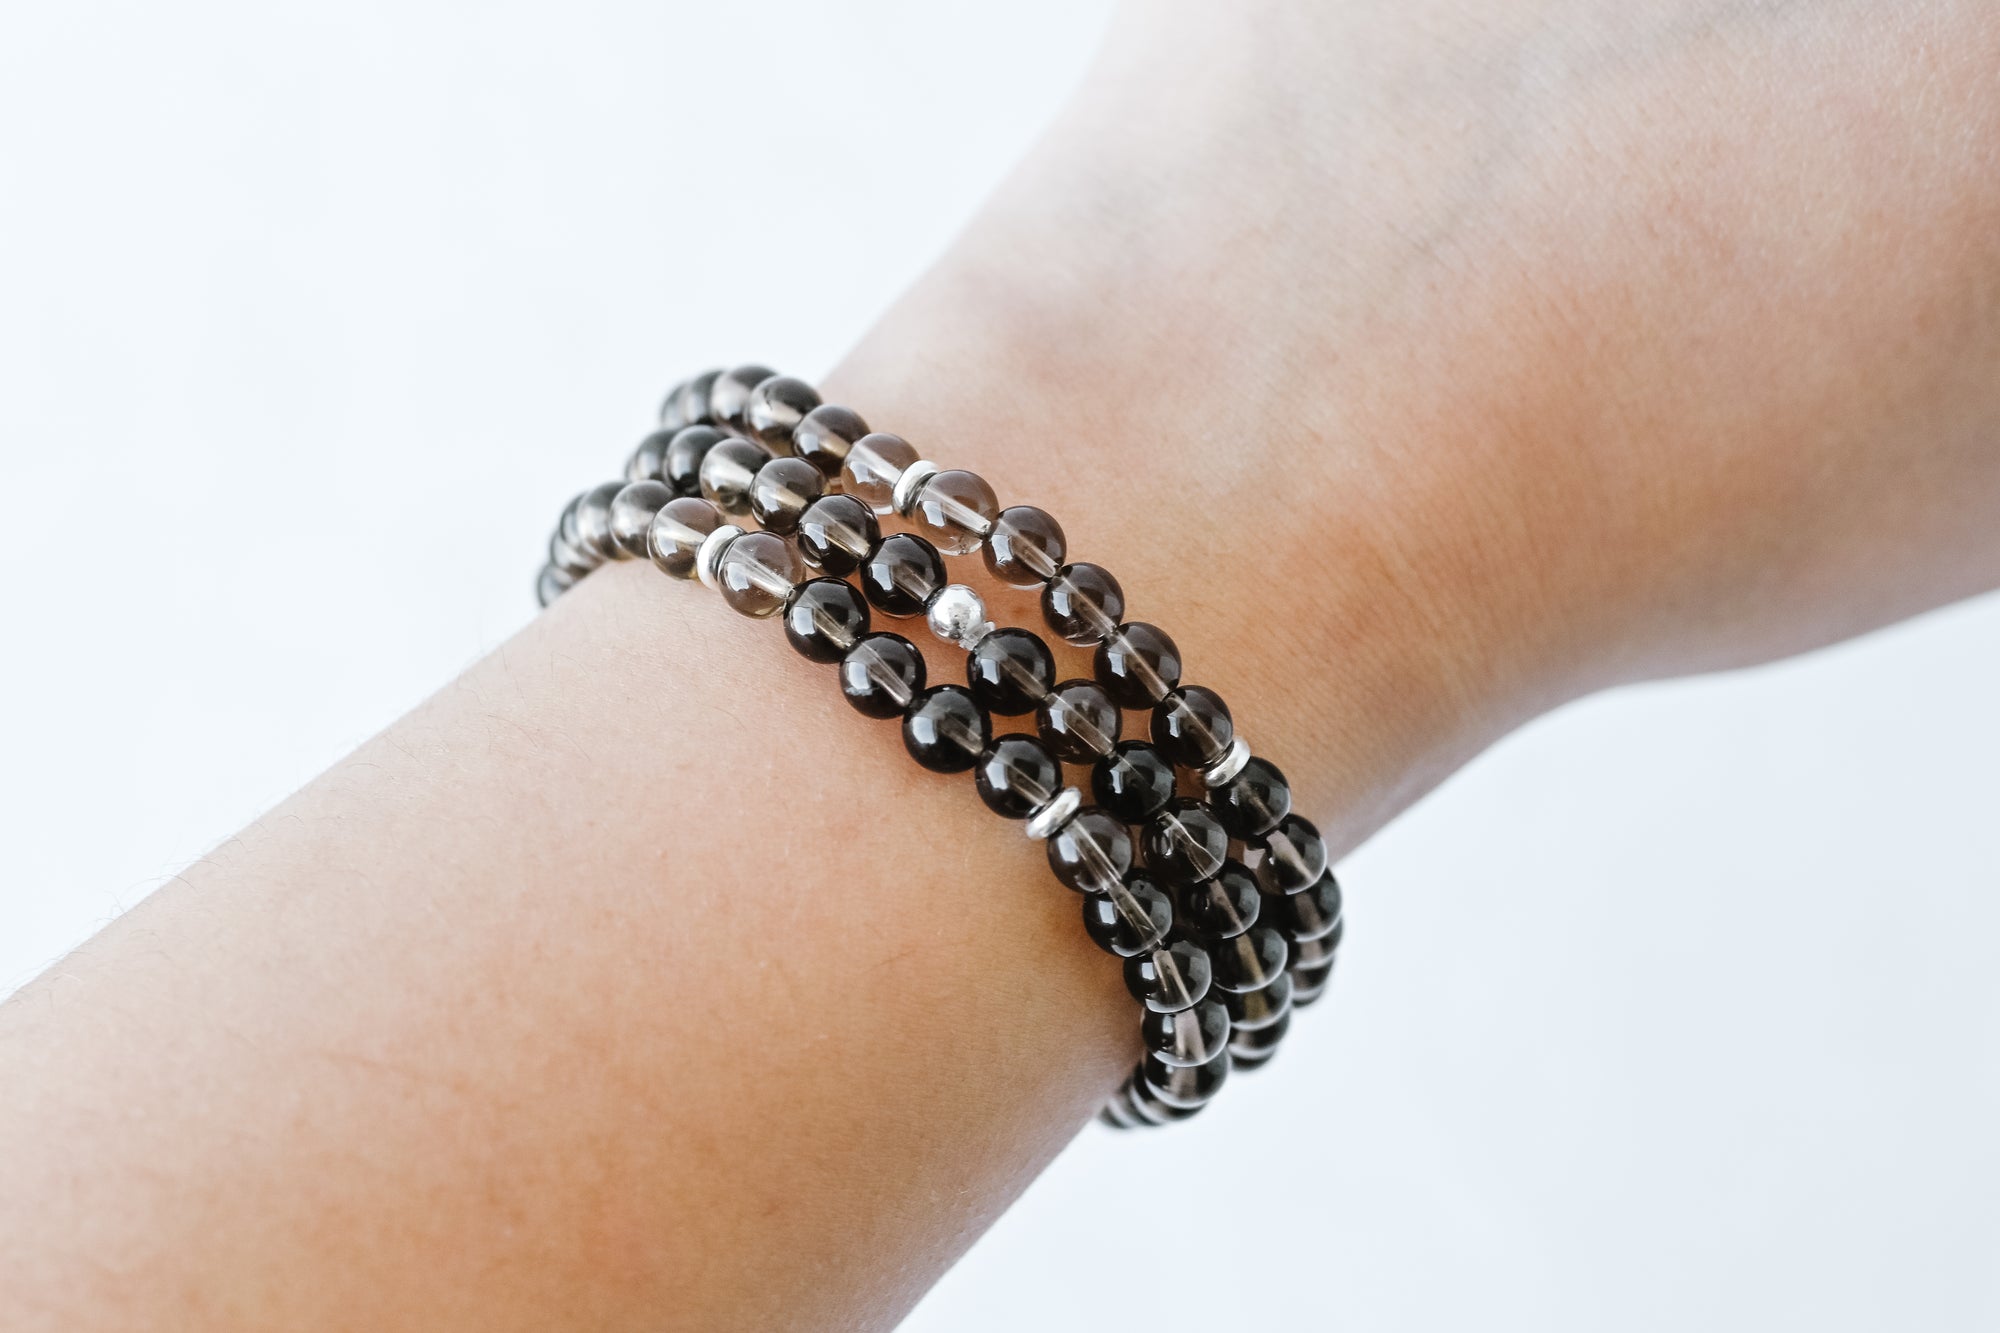 crystal bracelets meaning - Lemon8 Search